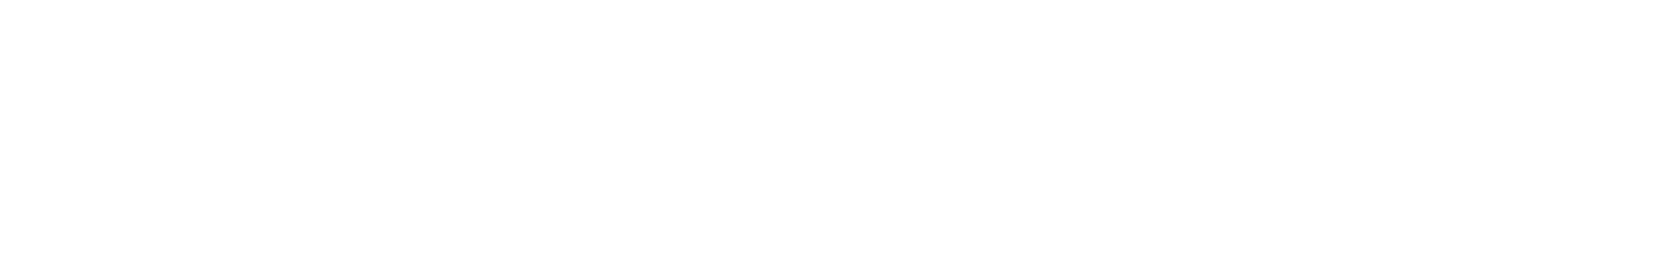 APRI - Care, Commitment, Community